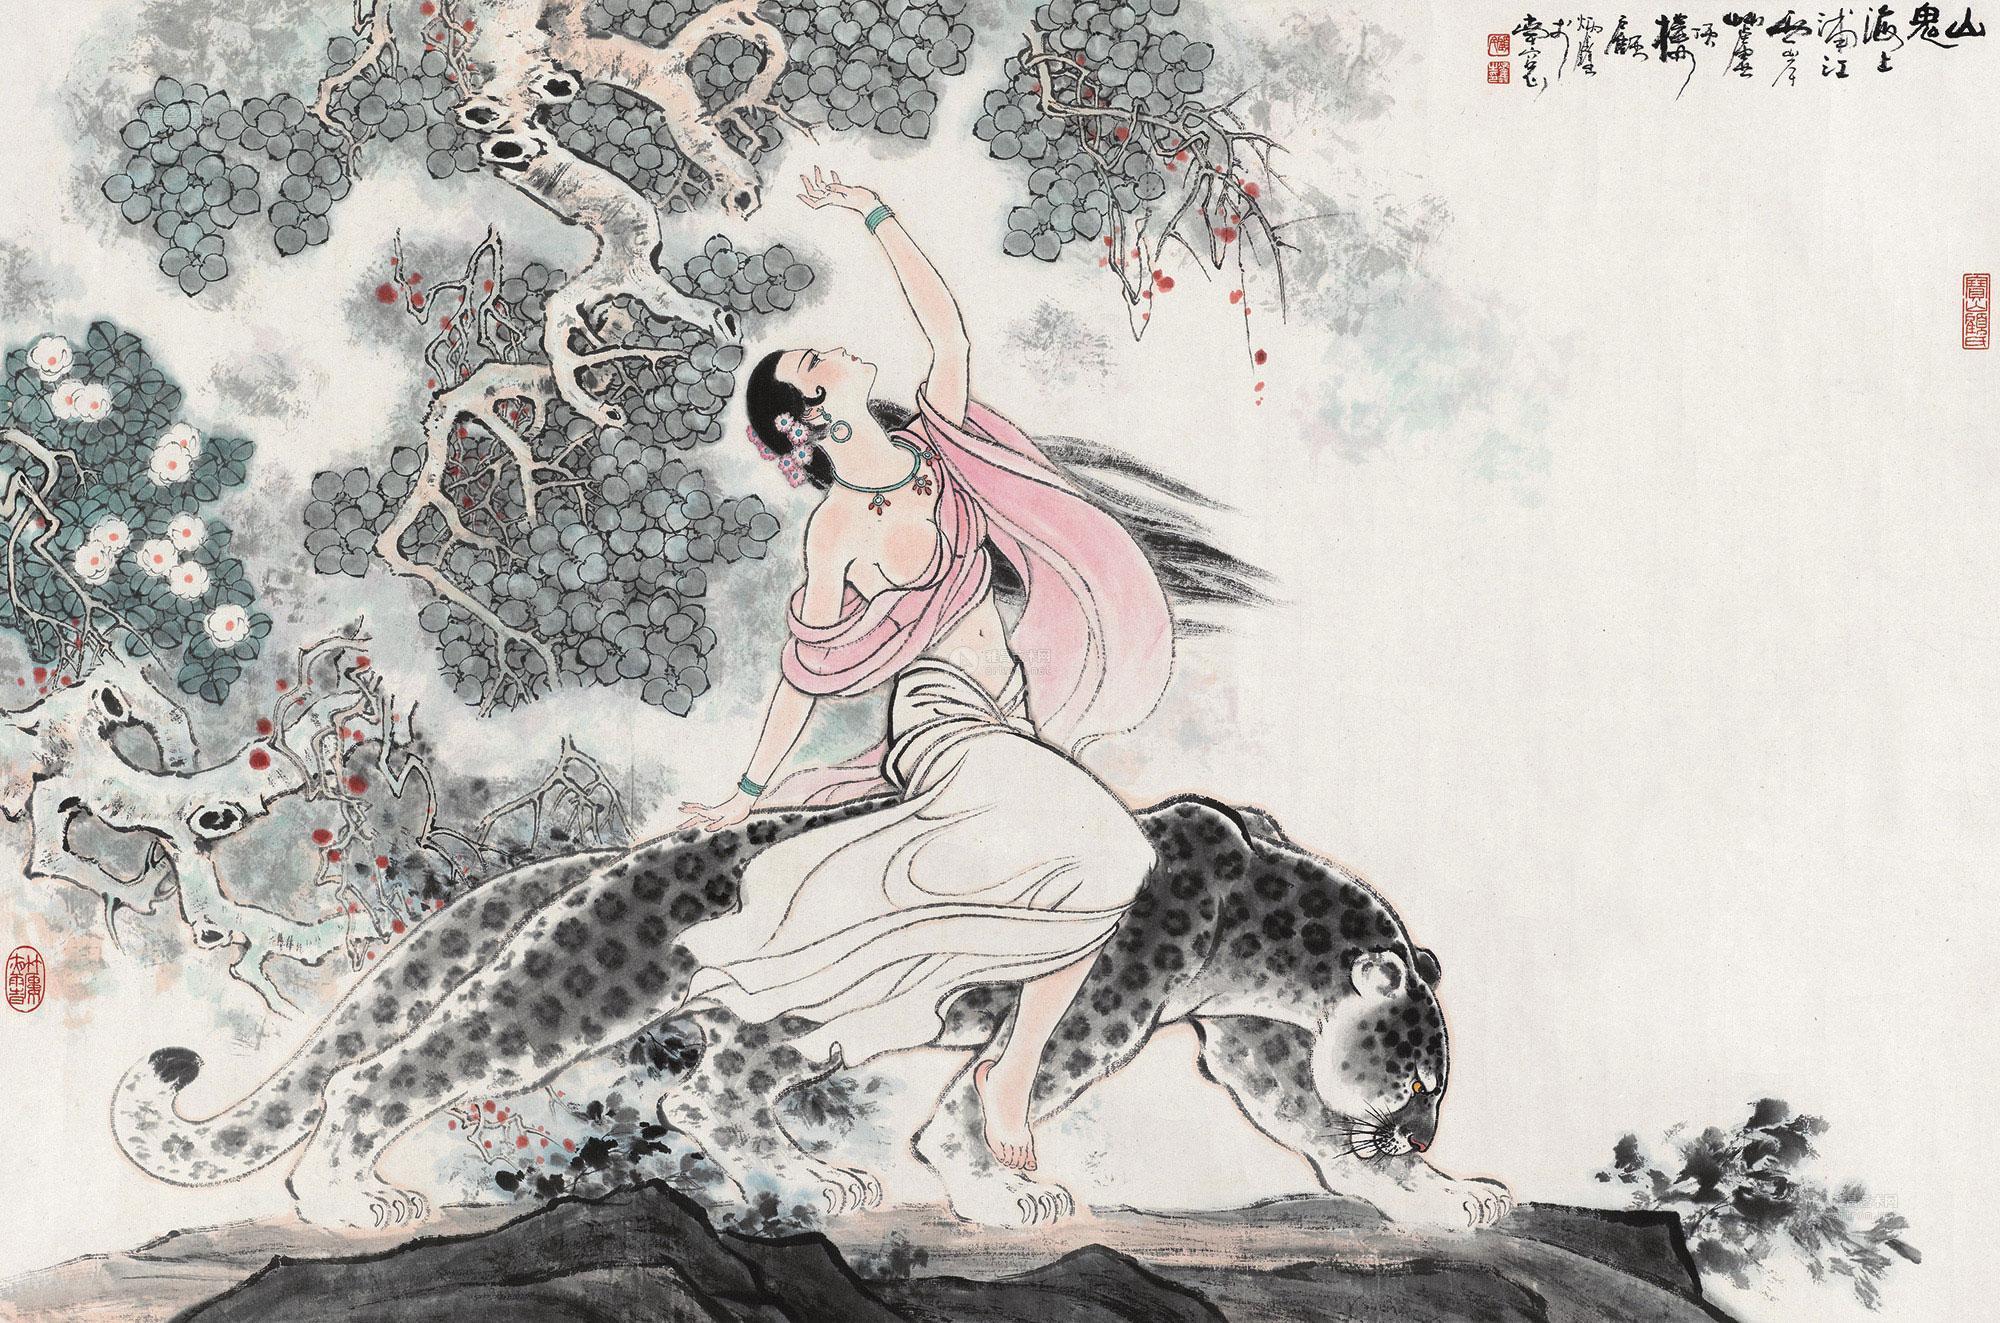 山鬼图 立轴作者顾炳鑫 (1923～2001)拍品分类中国书画